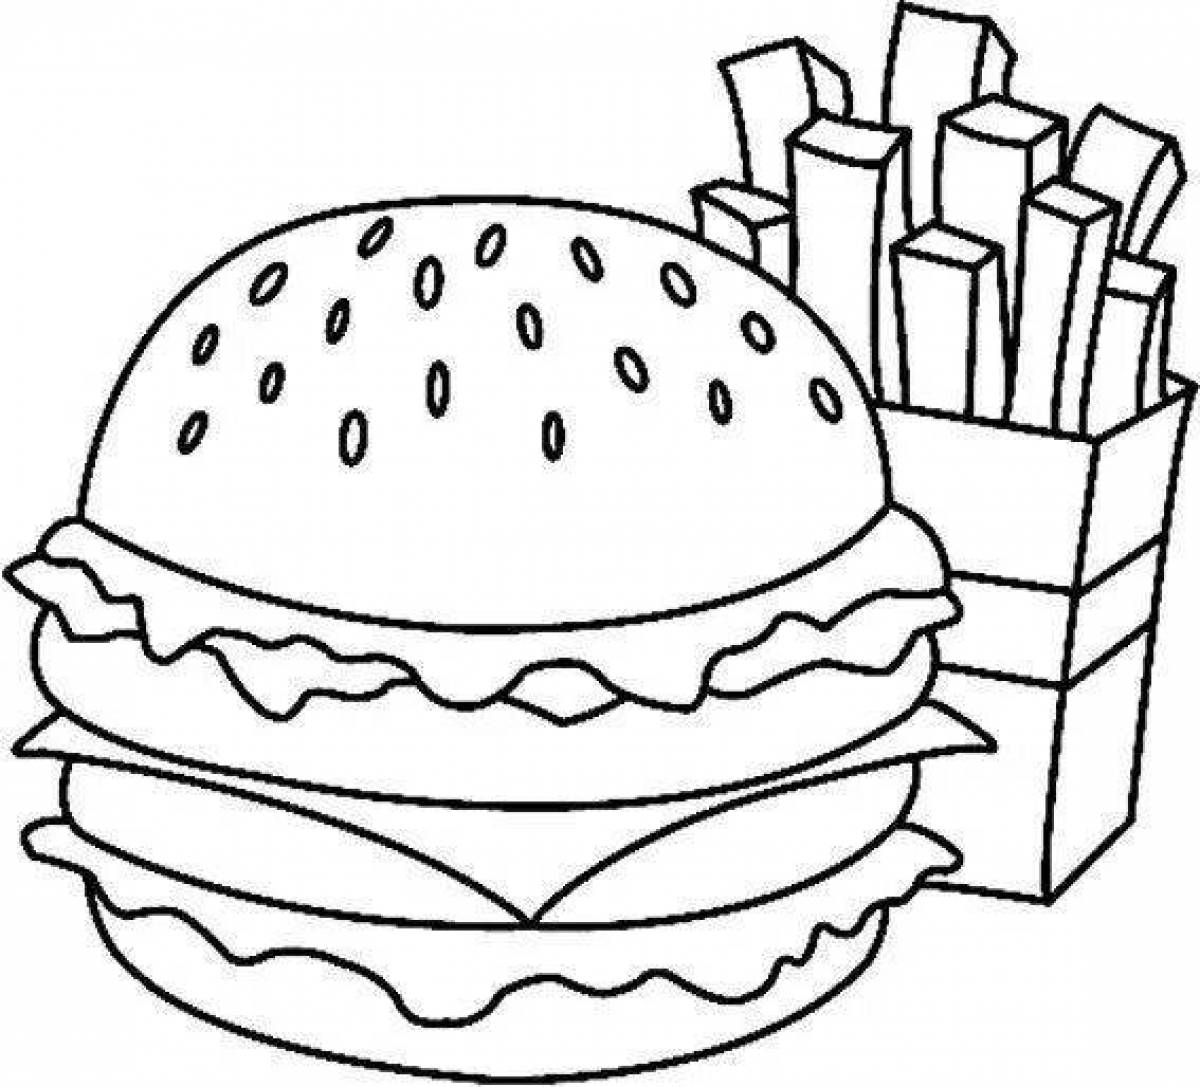 Радостная страница раскраски burger king